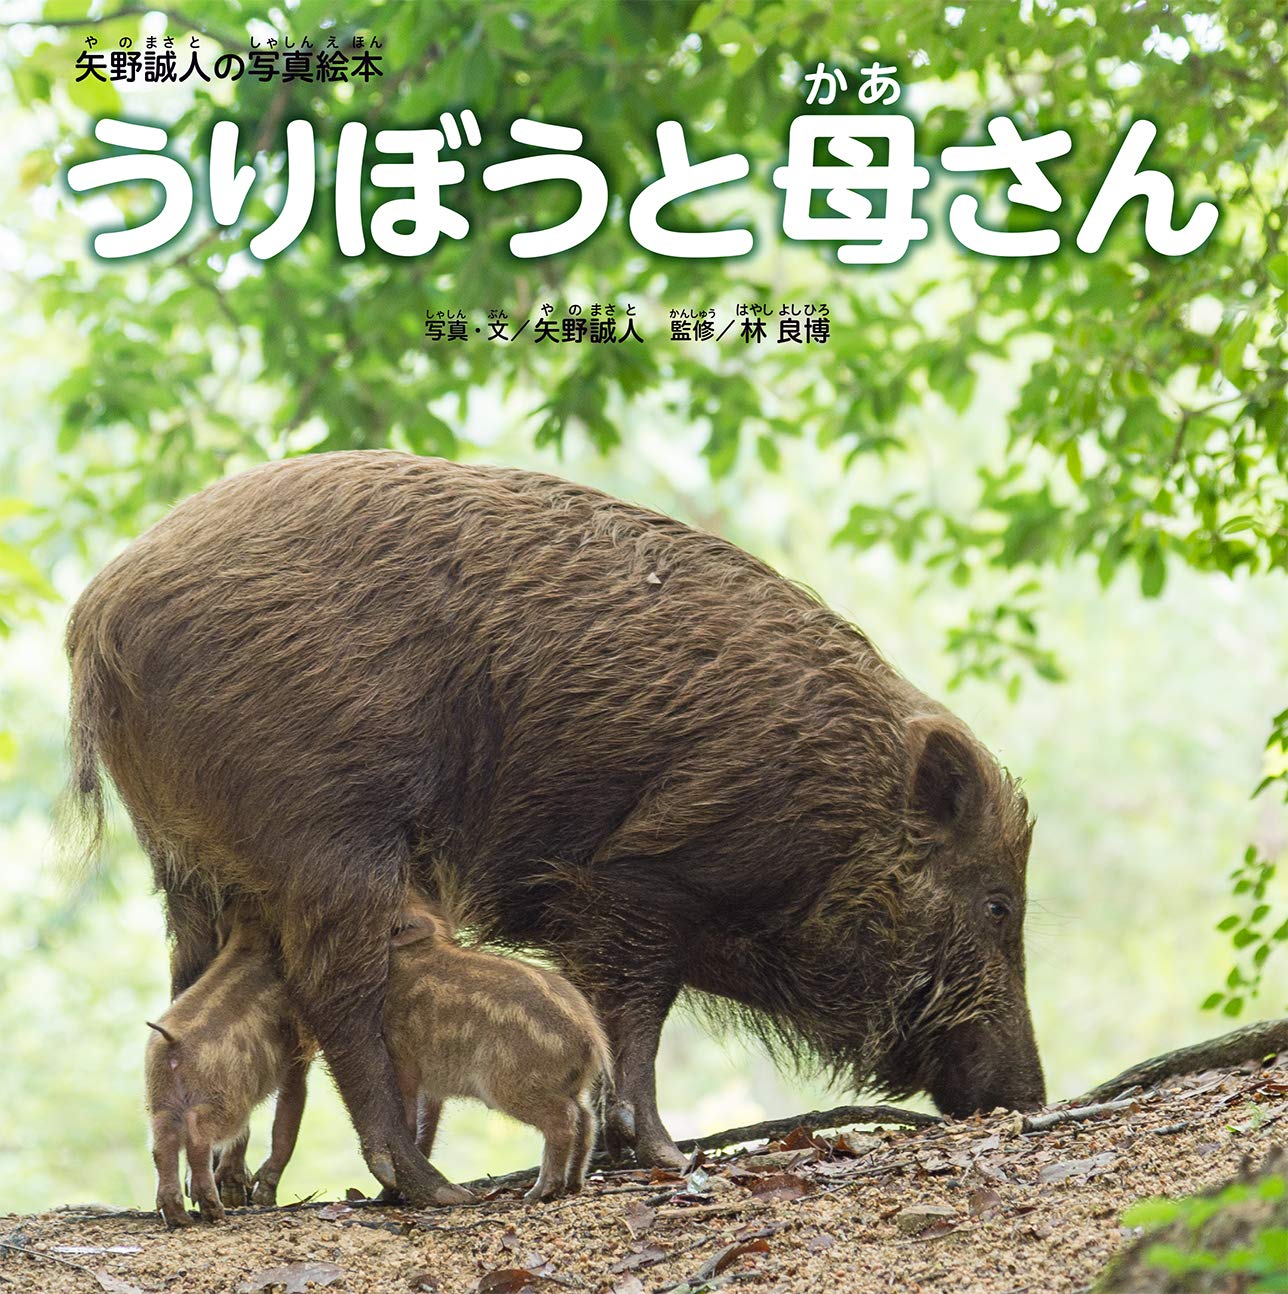 『うりぼうと母さん』が富山市立図書館のこども版「としょかんだより」で紹介されました。  